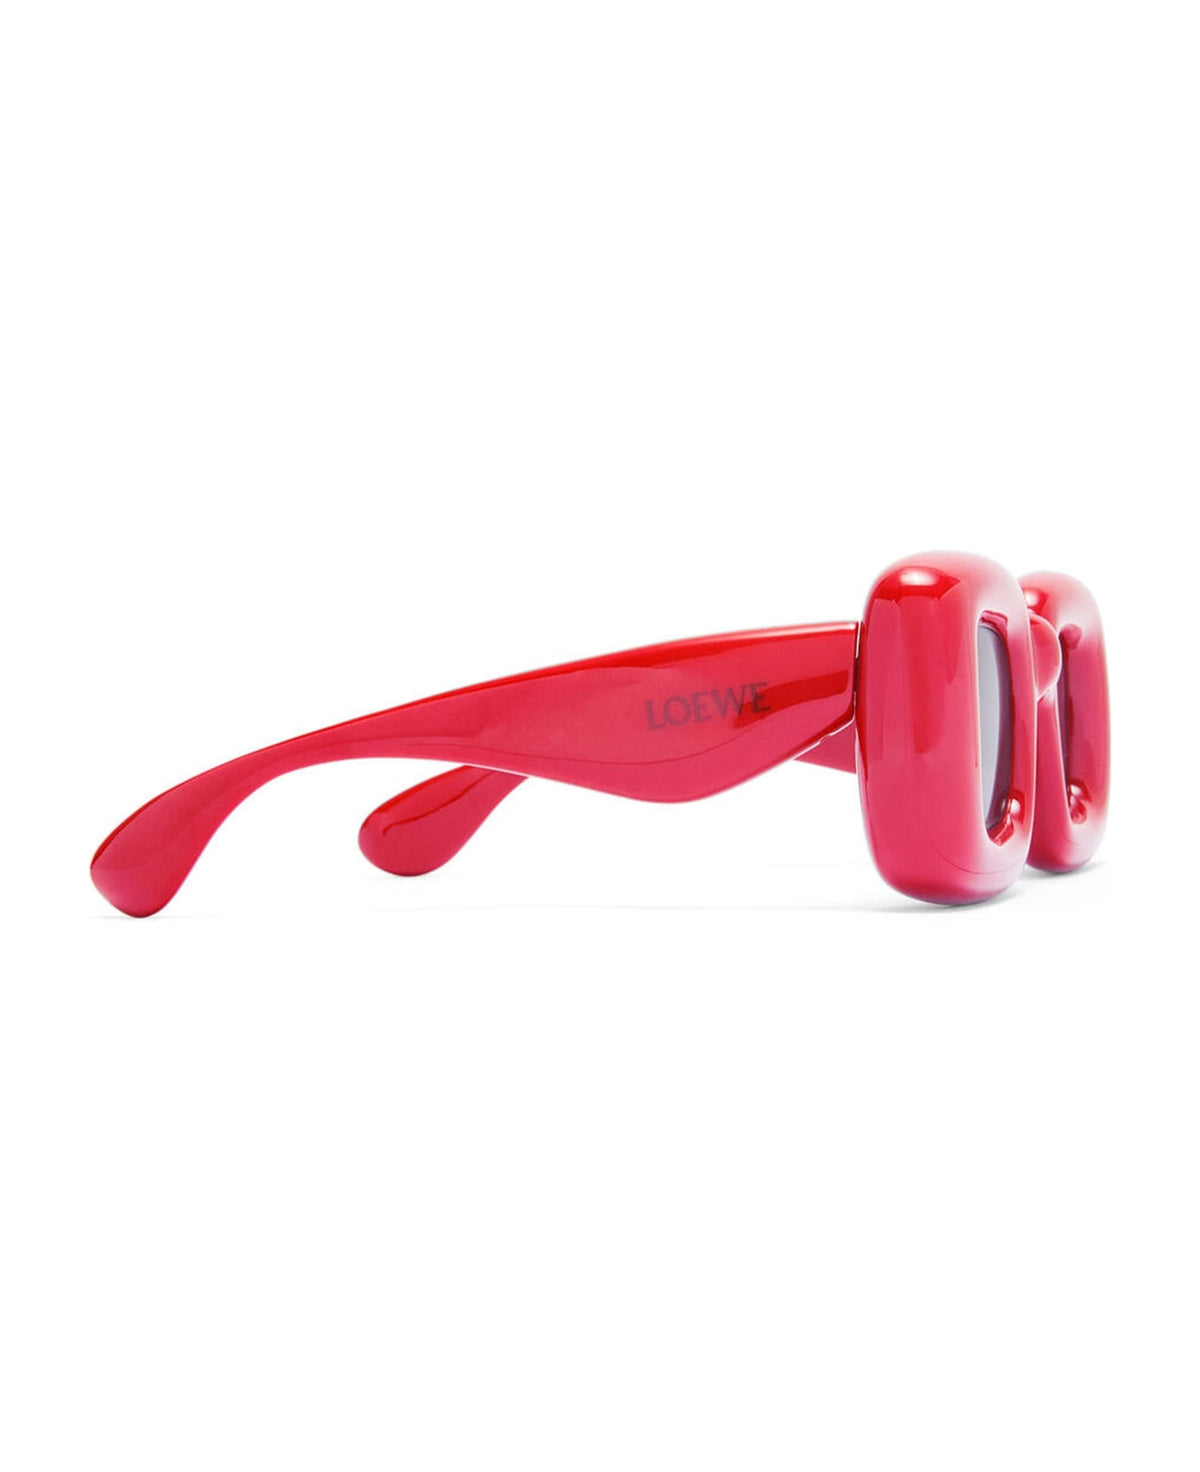 Lw40098i - Red Sunglasses